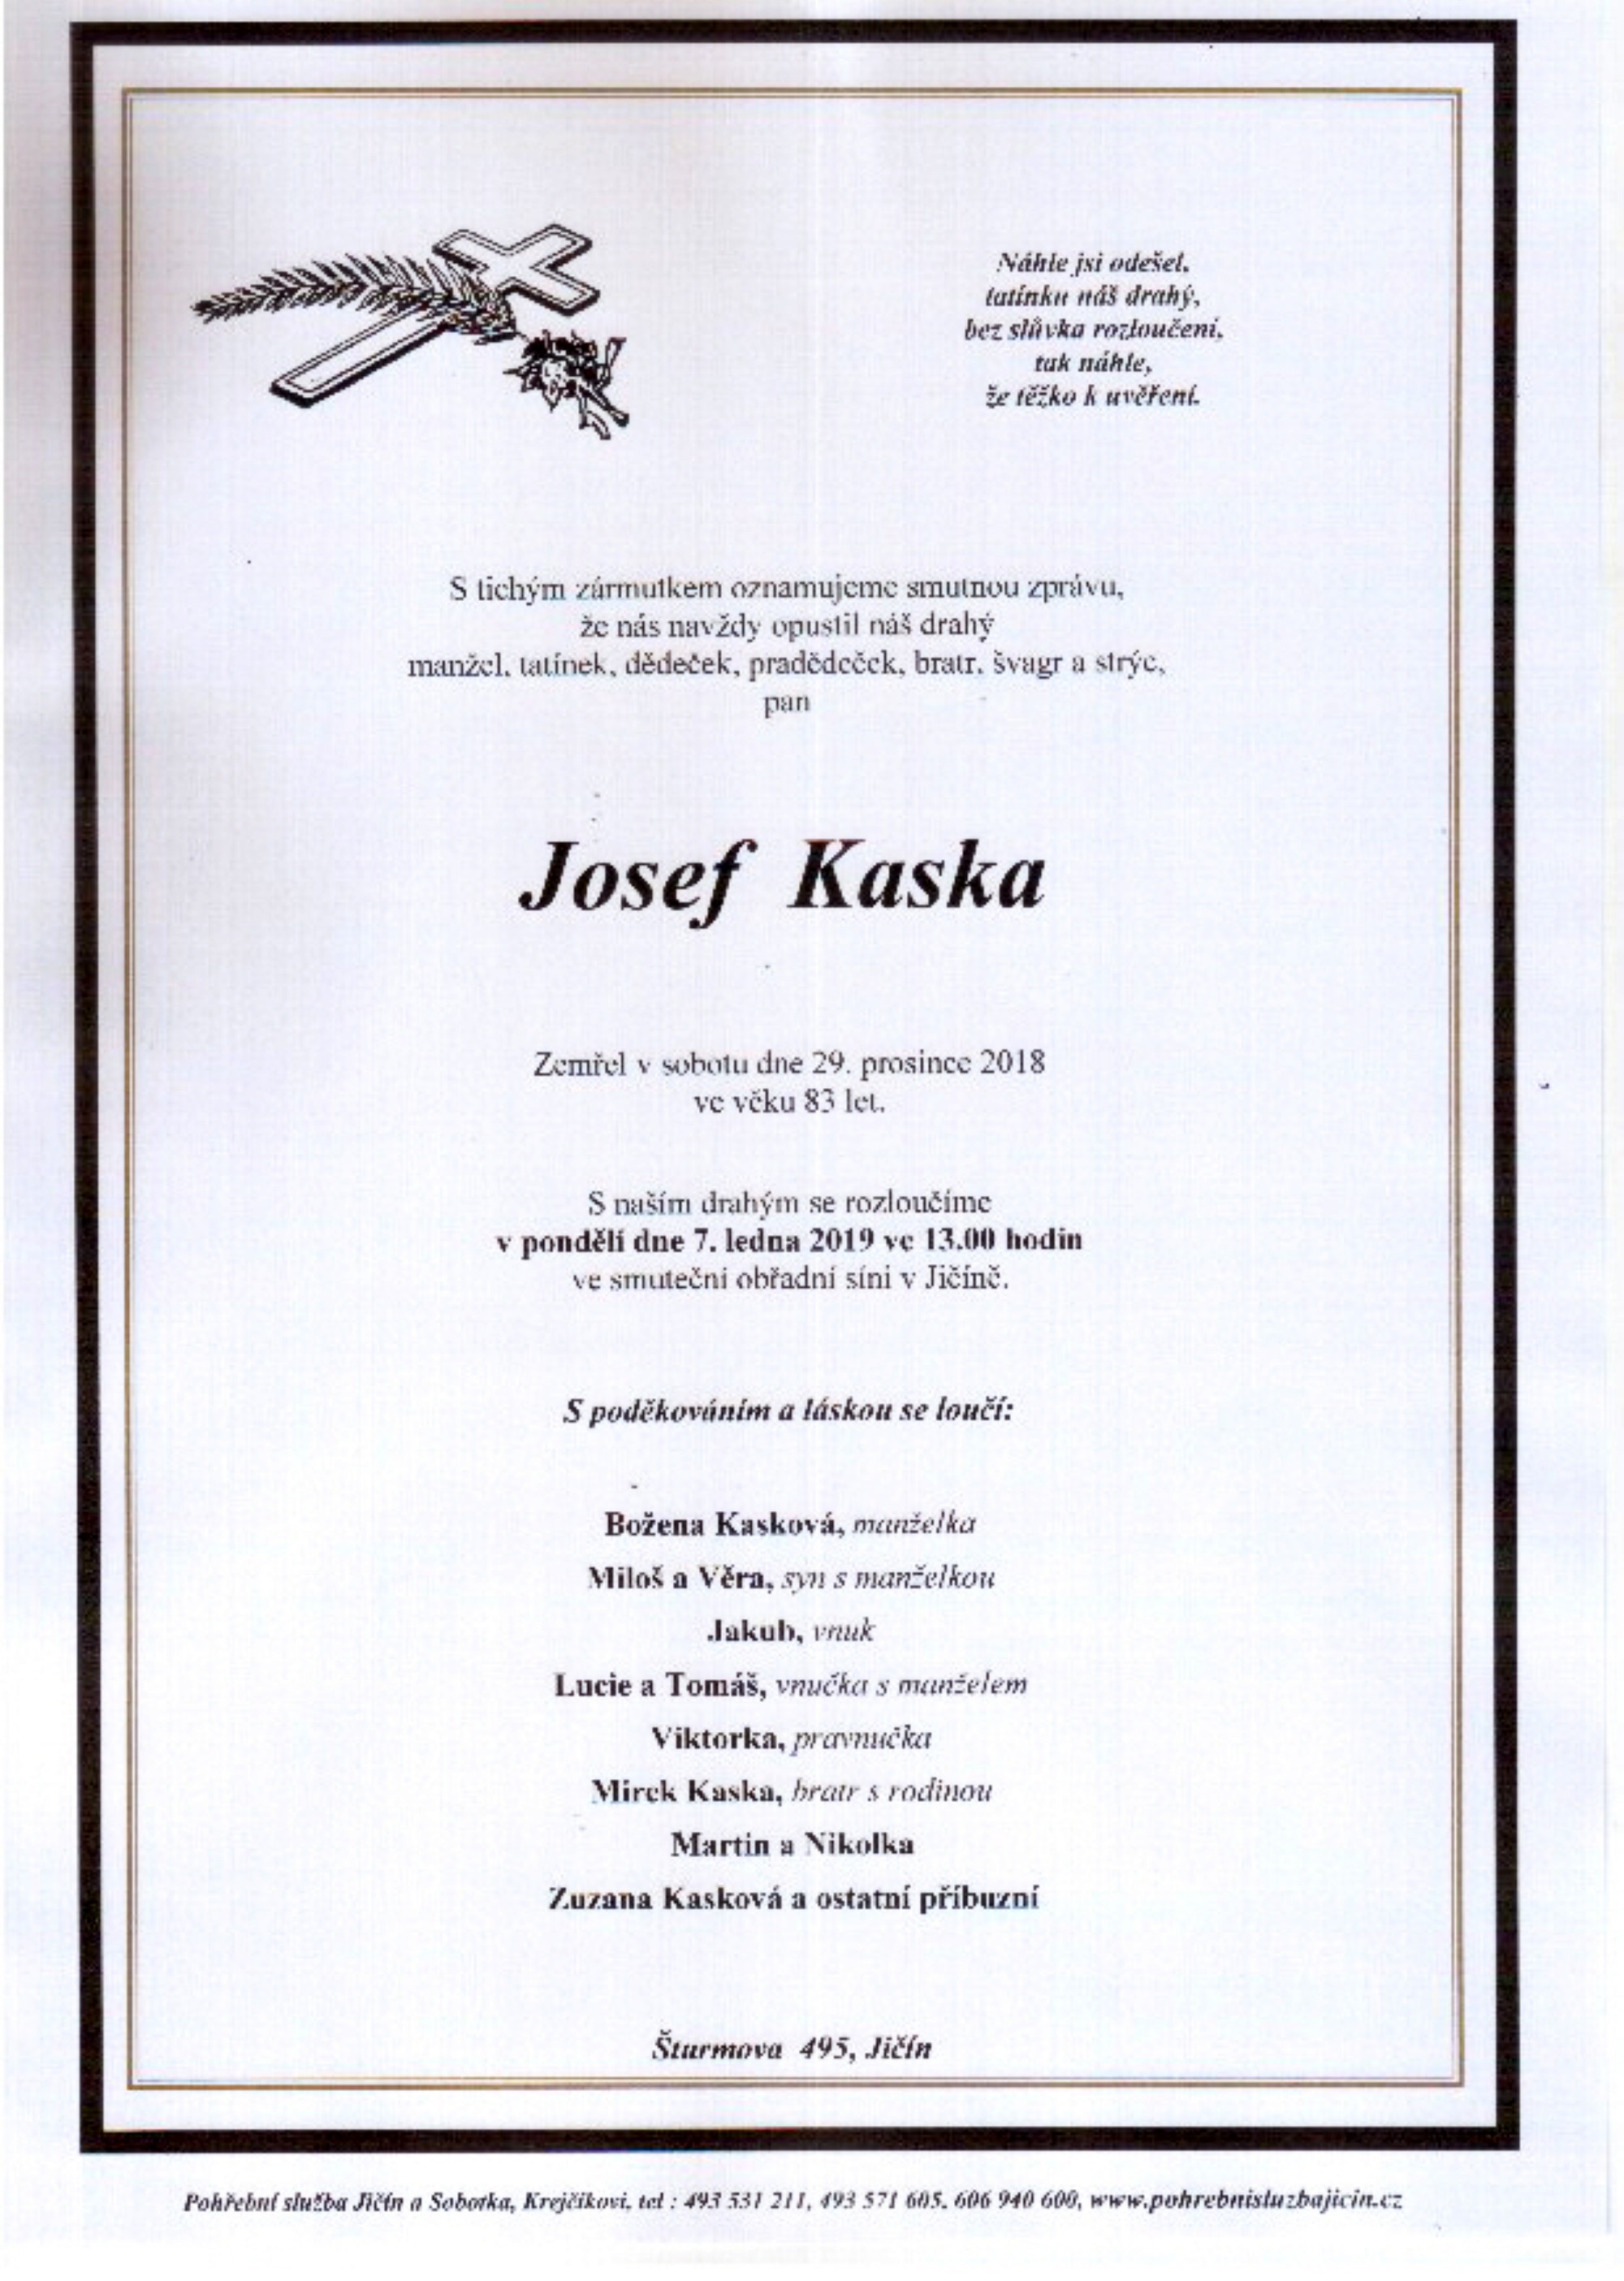 Josef Kaska